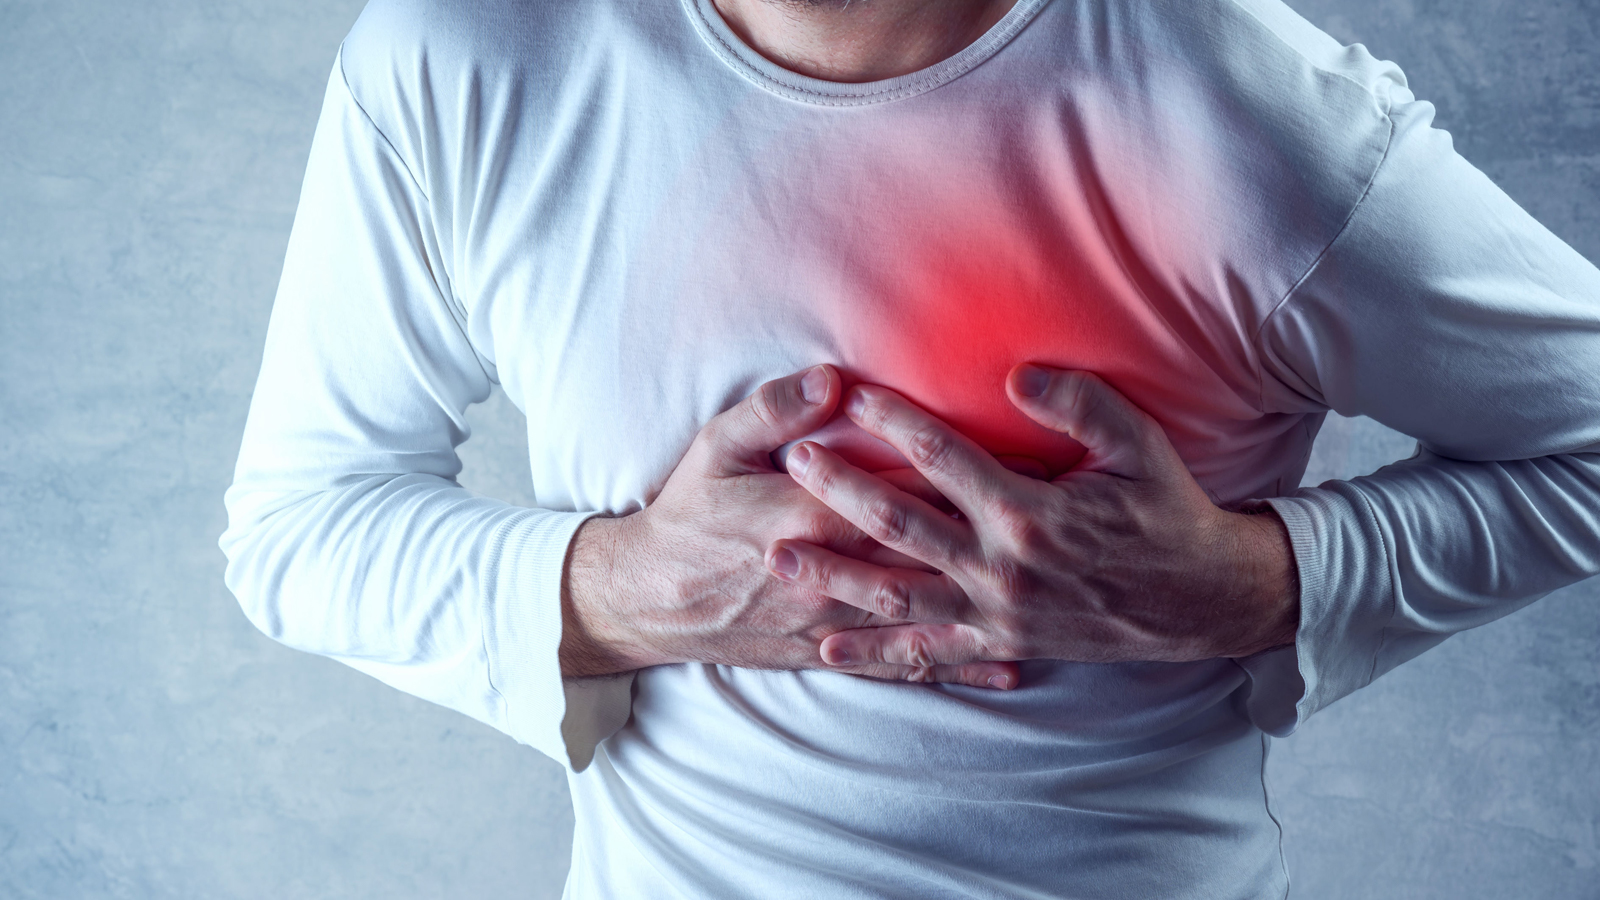 Bệnh tim đập nhanh nếu đã xác định là bệnh lý thì bạn không nên lơ là, vì đó có thể là cảnh báo ban đầu của một số bệnh lý nguy hiểm về tim mạch.